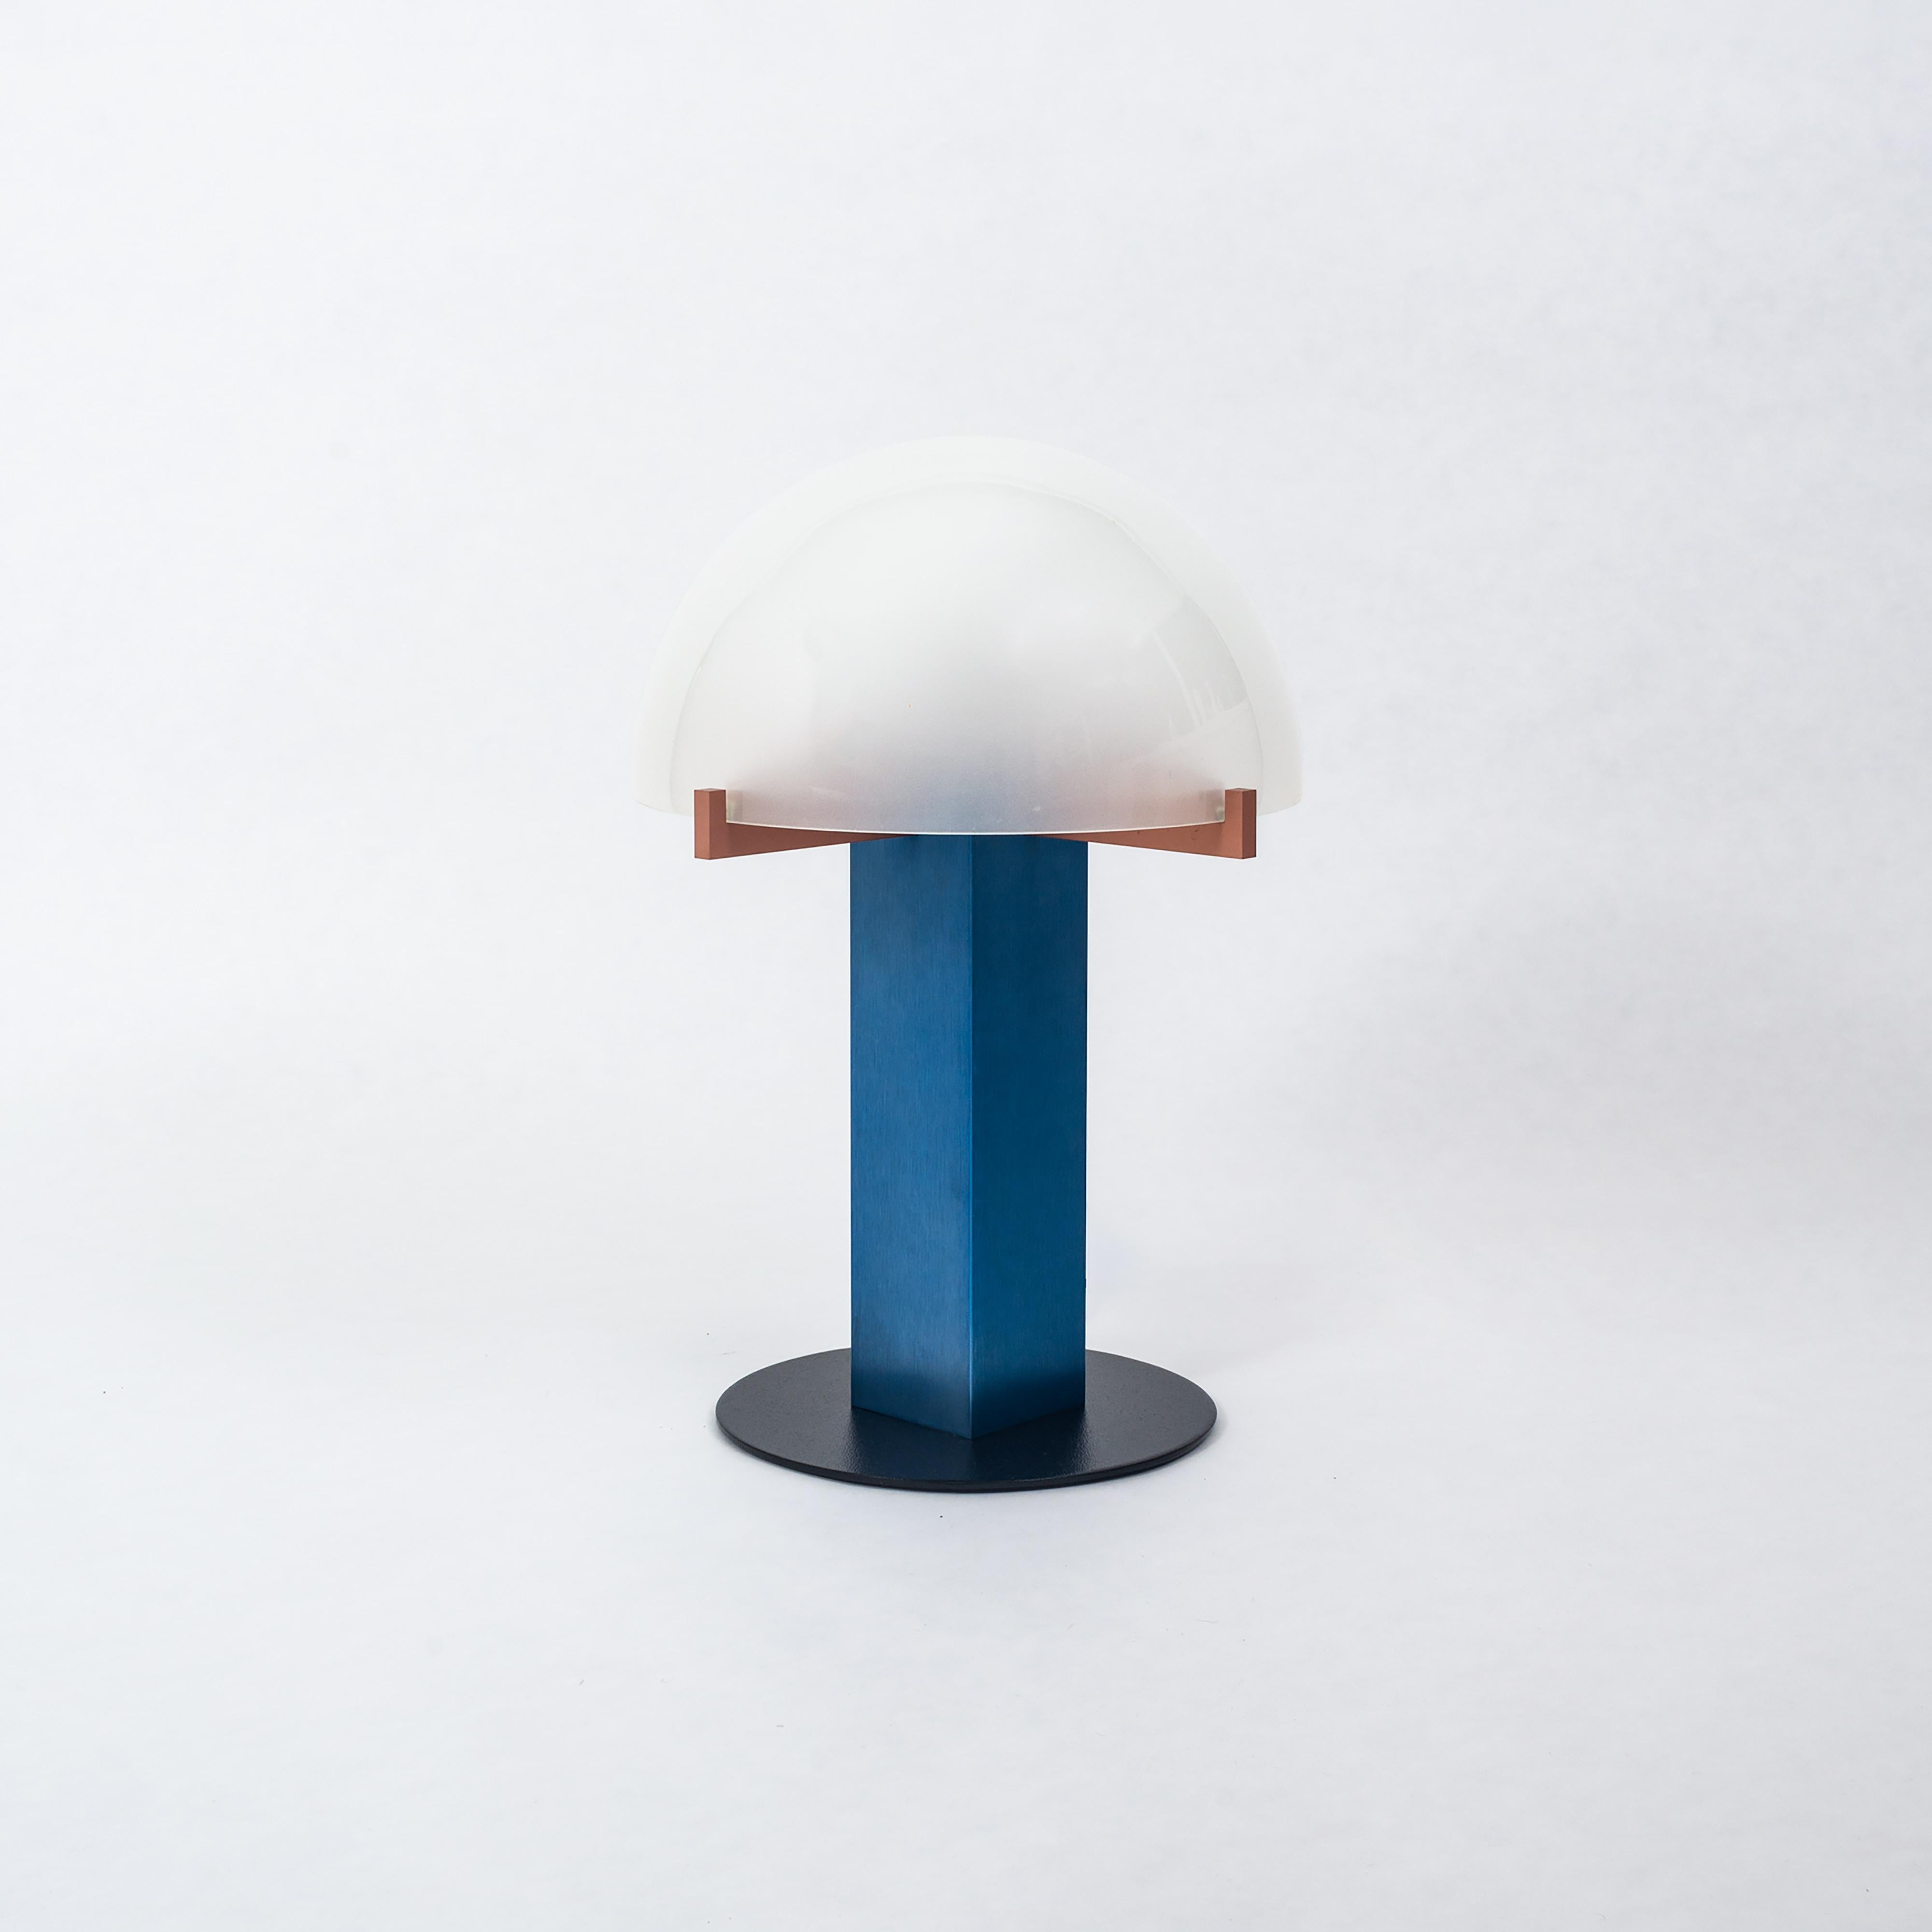 Une lampe de table moderne de Ron Rezek, vers les années 1980. Également connu sous le nom de « Lampe de chambre à coucher ». Cette lampe est composée d'aluminium brossé anodisé bleu et rouge avec un lourd abat-jour en forme de dôme en verre dépoli